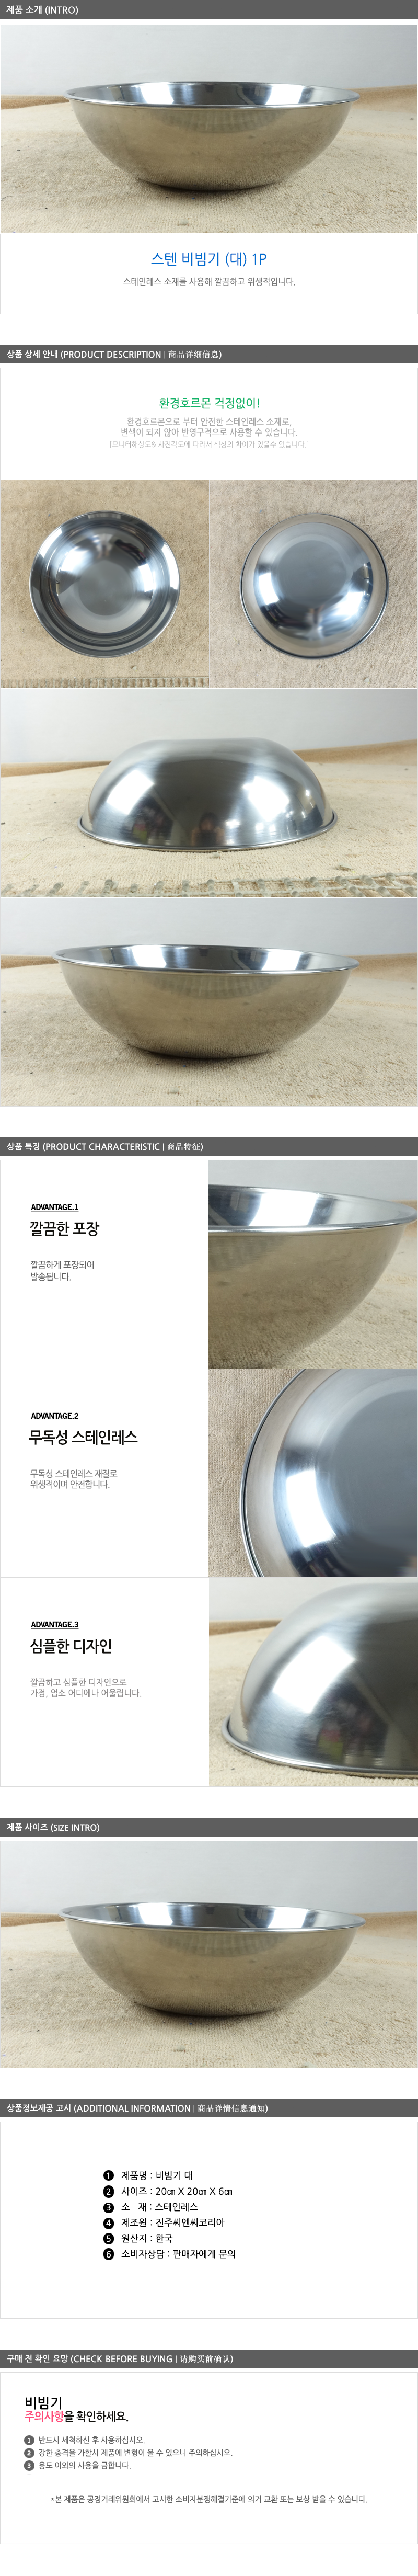 스텐비빔기(대)1입 20cm - 3EA 식기 그릇 대접 비빔그릇 냉면기 알루미늄그릇 비빔밥그릇 국수그릇 다용도그릇